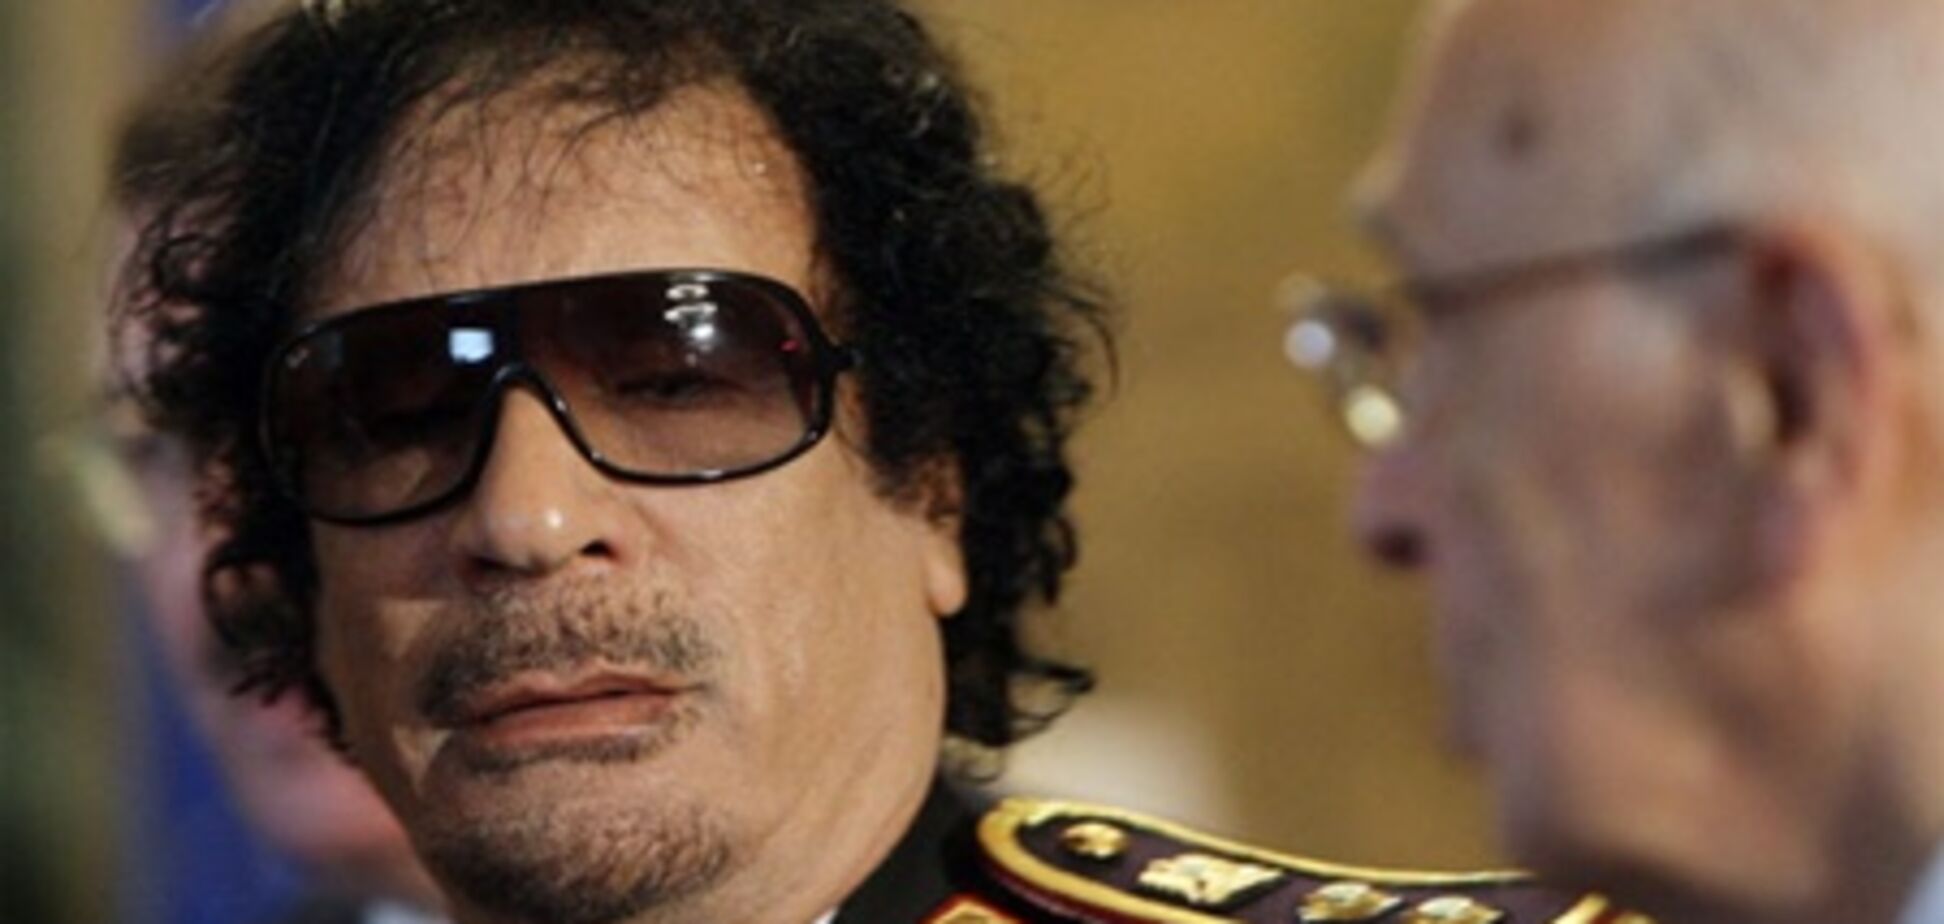 Лондон и Париж намерены убрать Каддафи - но кто будет править в Ливии?